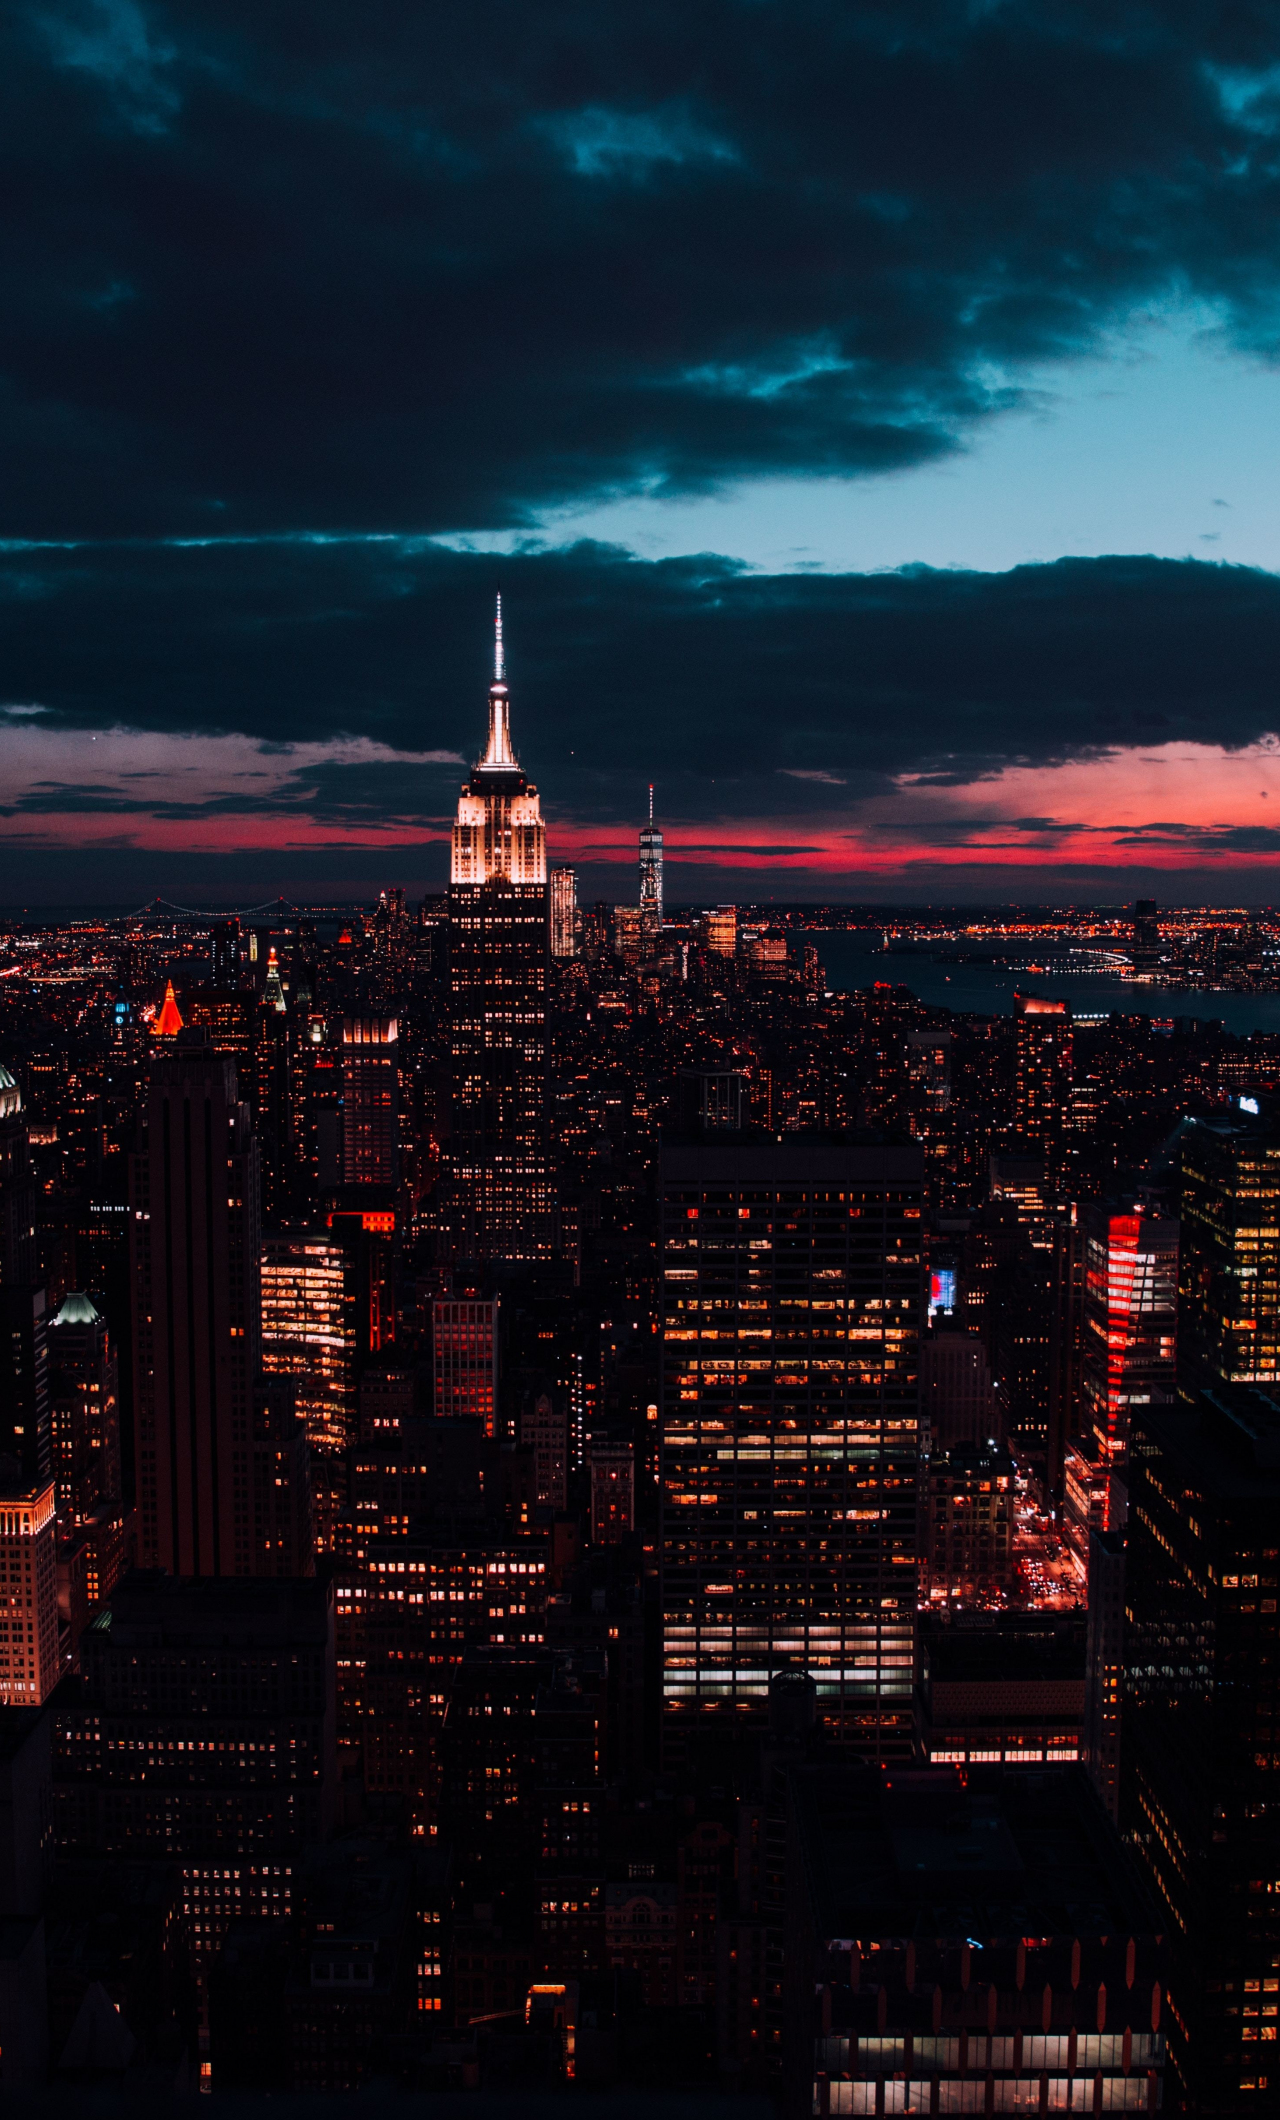 Hình nền công viên Central Park vào ban đêm hay toà nhà Empire State Building làm nền rực rỡ, là những tác phẩm nghệ thuật đầy cảm hứng cho chiếc iPhone của bạn. Chọn ngay hình ảnh yêu thích và tận hưởng vẻ đẹp độc đáo của thành phố New York.